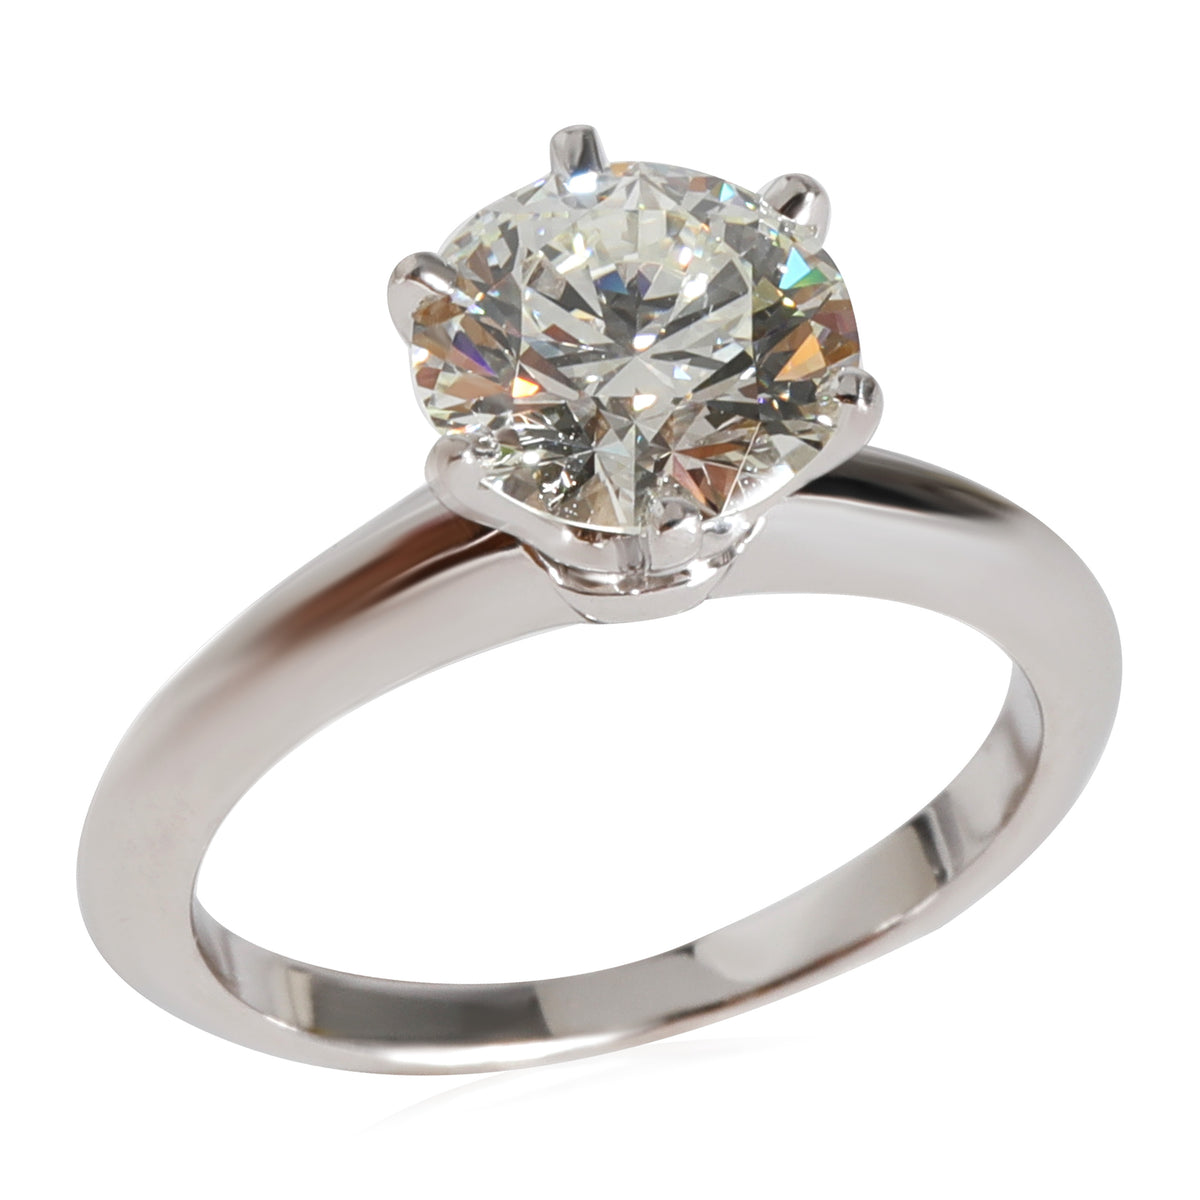 Diamond Solitaire Engagement Ring in Platinum H VS1 1.53 CT